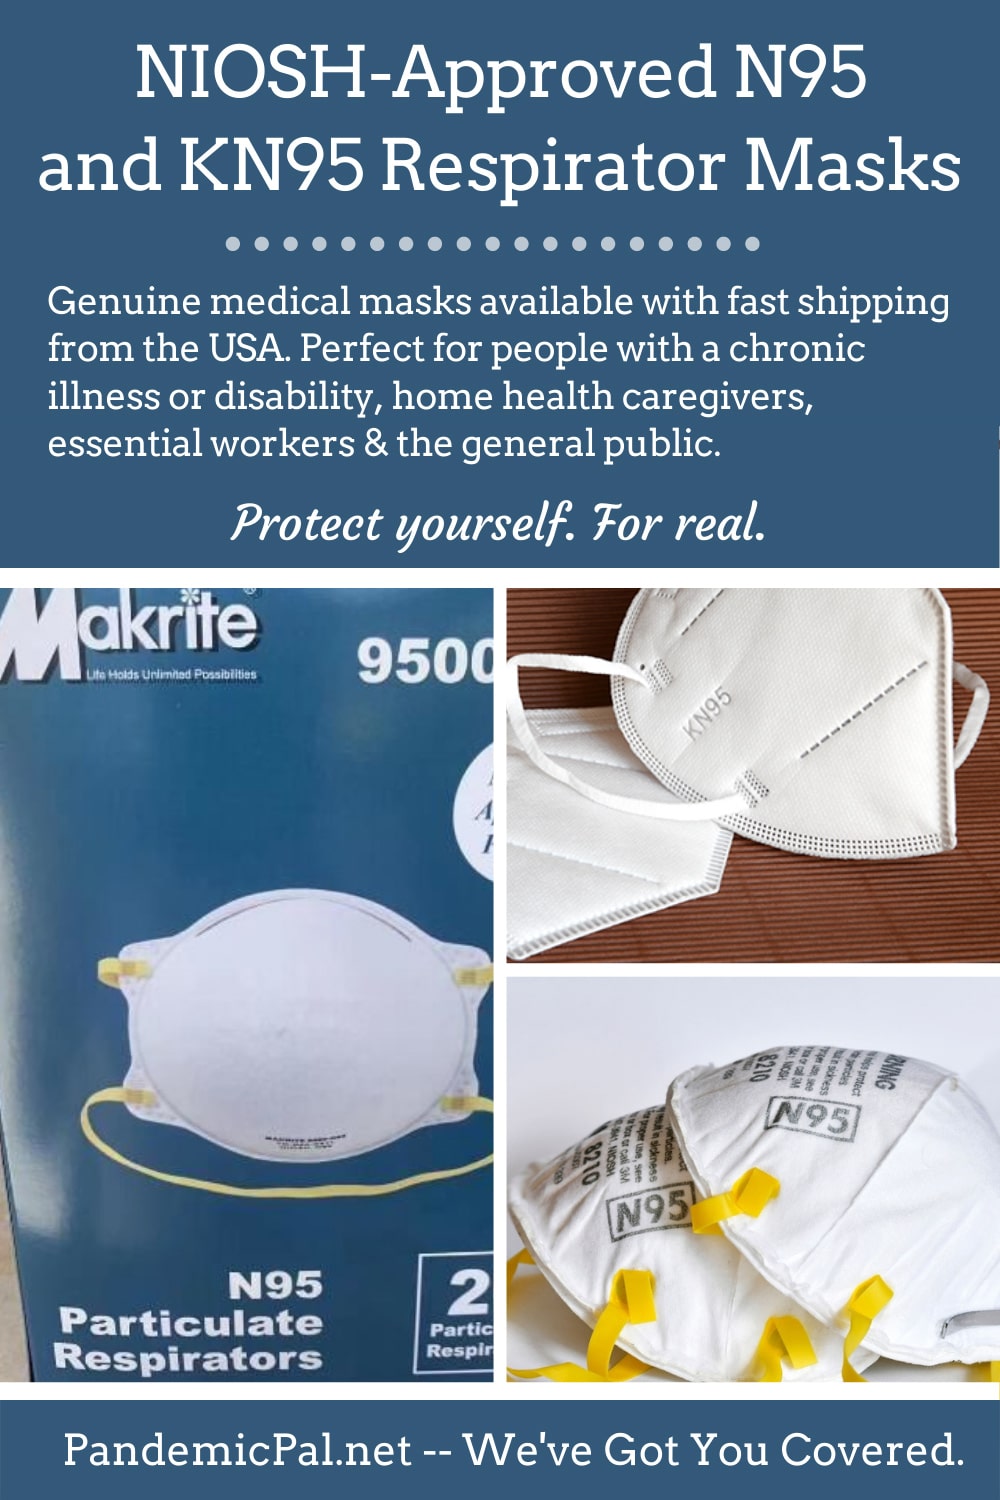 NIOSH N95 respirator masks for sale on Pandemic Pal.